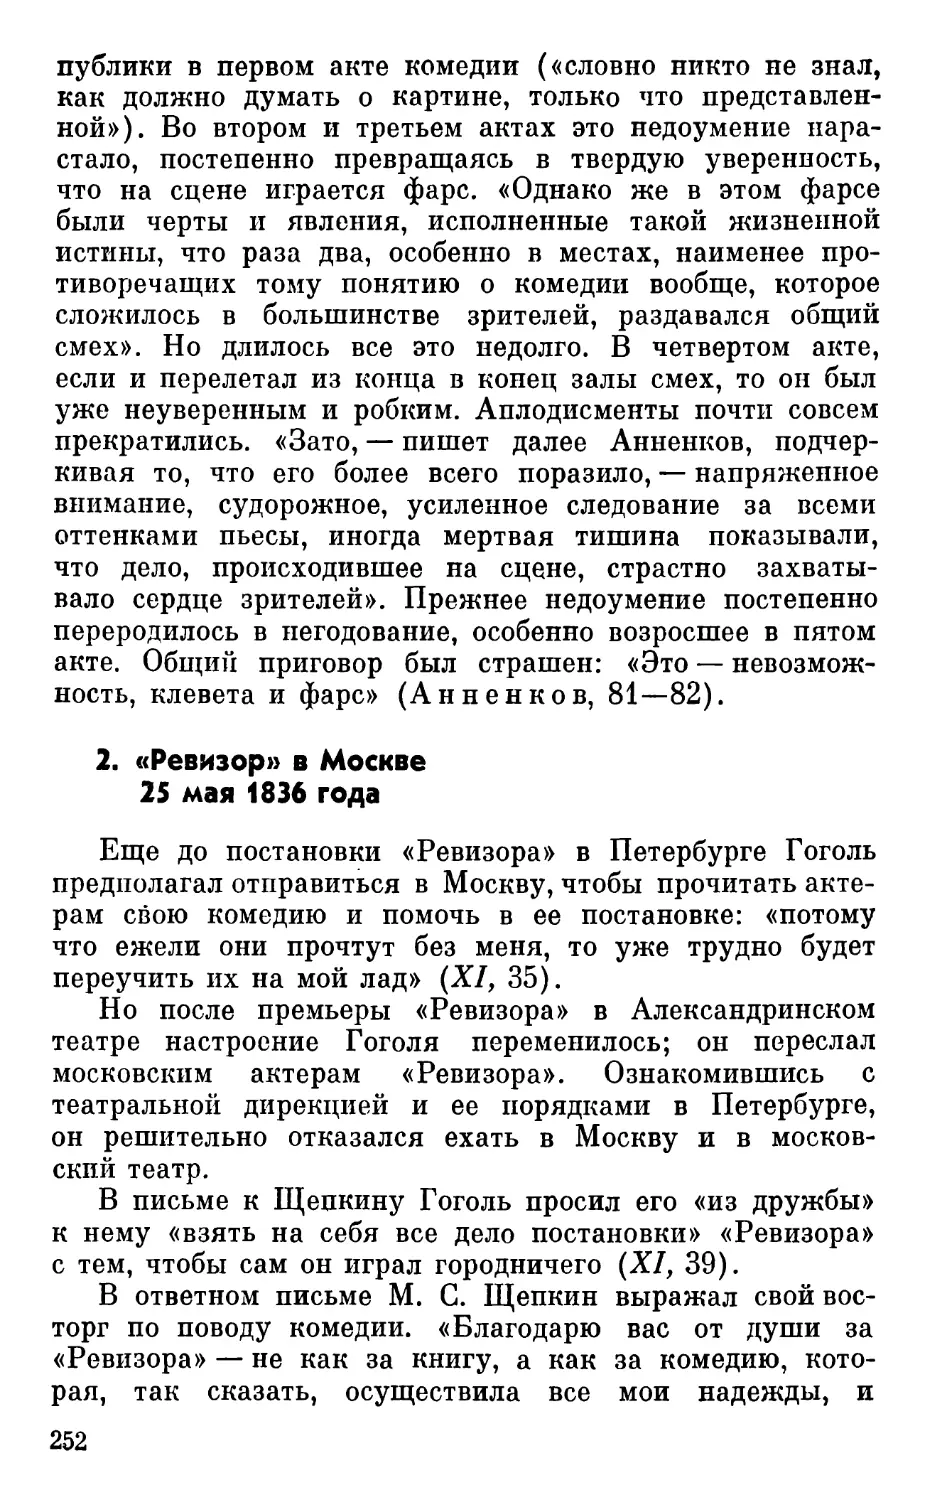 2. «Ревизор» в Москве 25 мая 1836 года